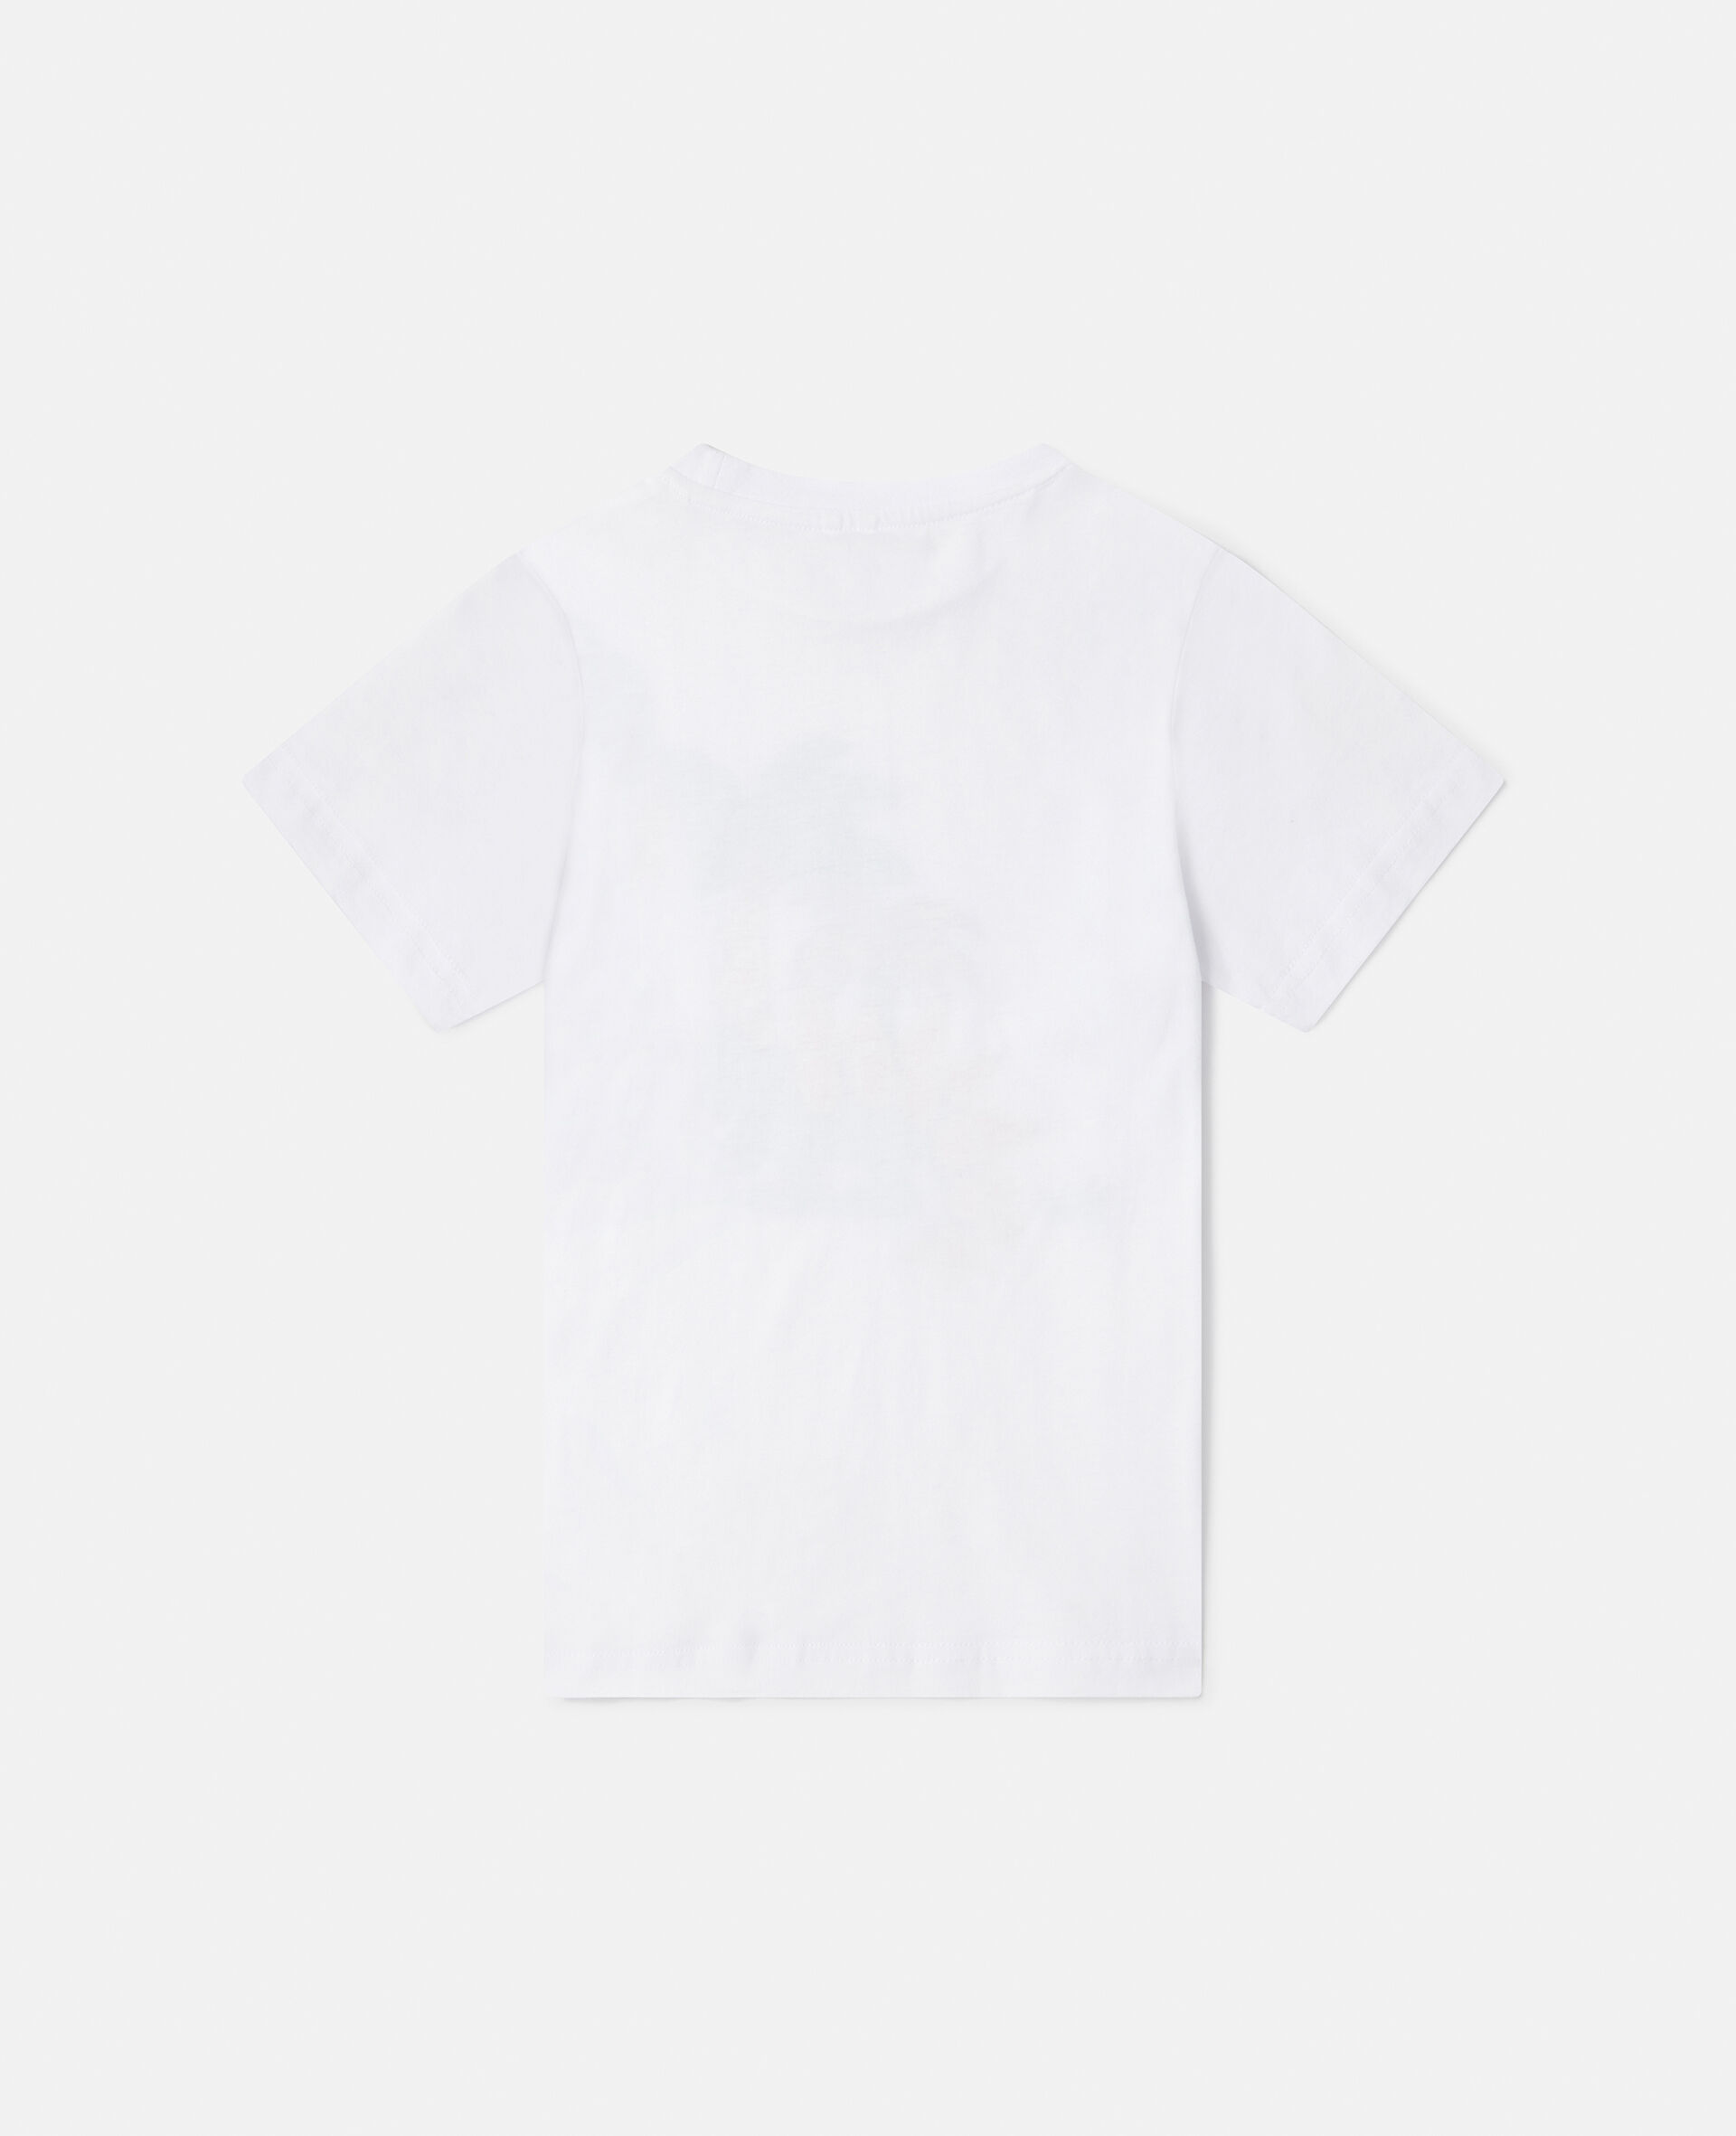 カメレオンモチーフ Tシャツ-ホワイト-large image number 2